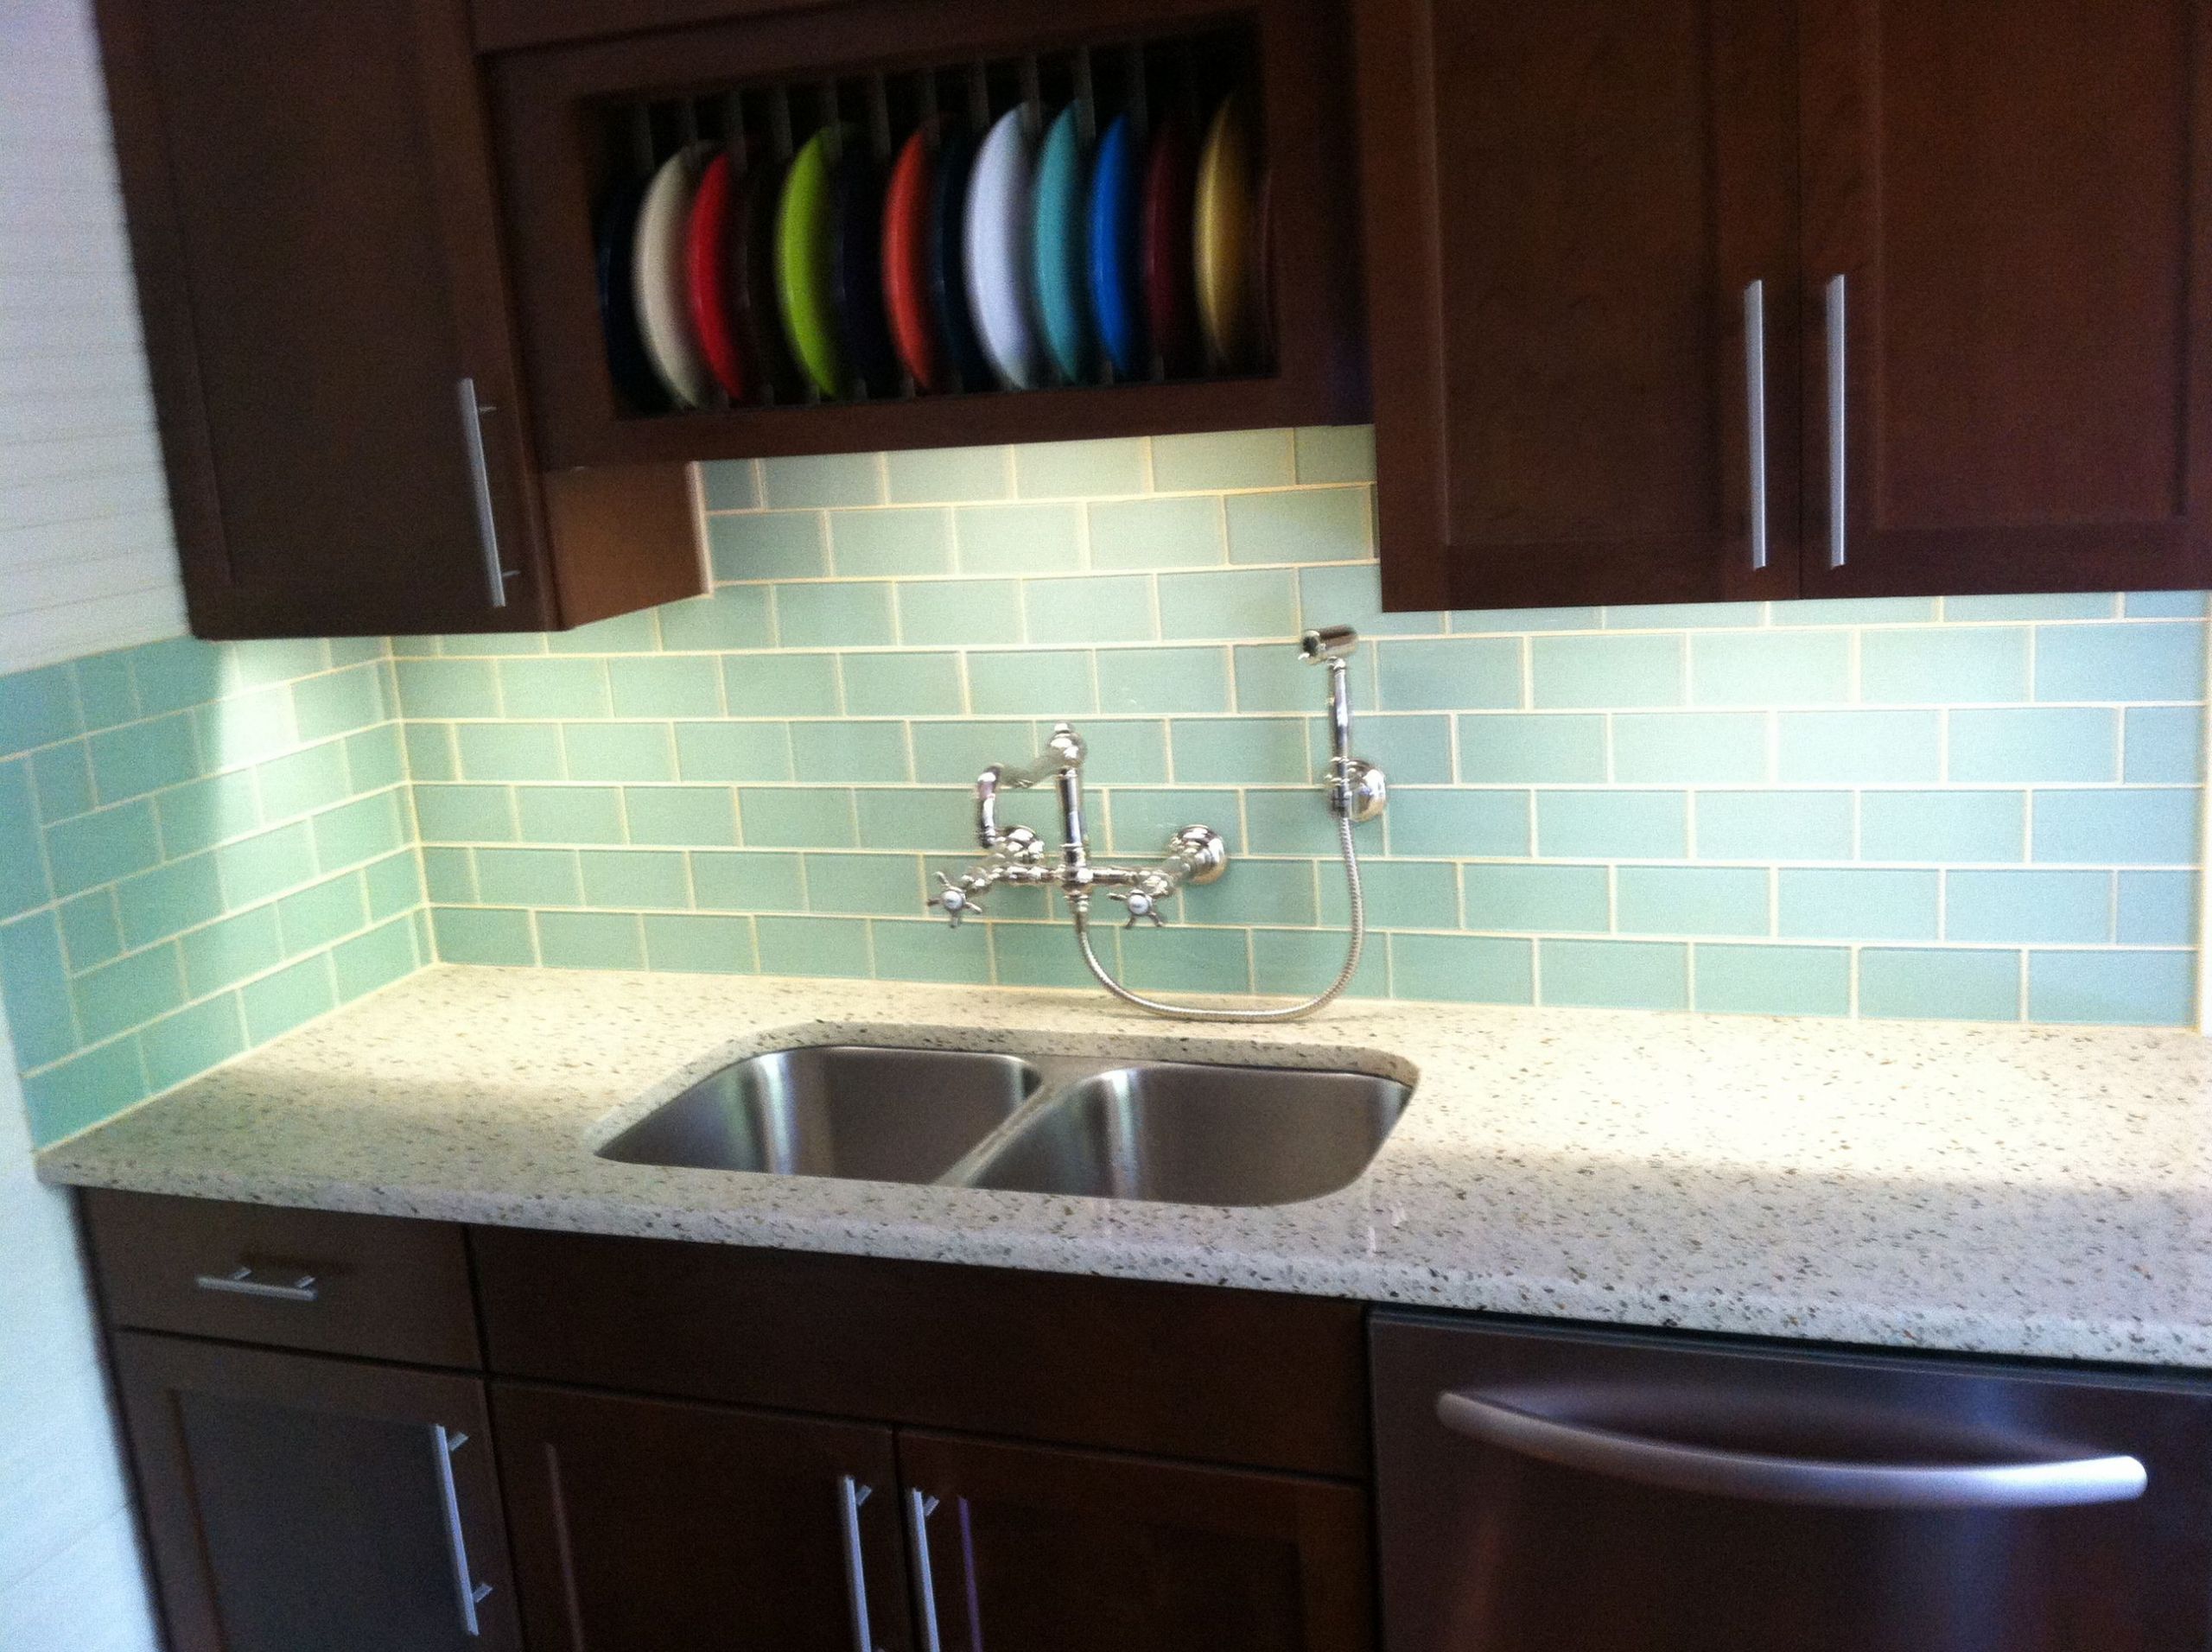 Tiling Kitchen Backsplash Ideas
 Tiles for Kitchen Back Splash A Solution for Natural and